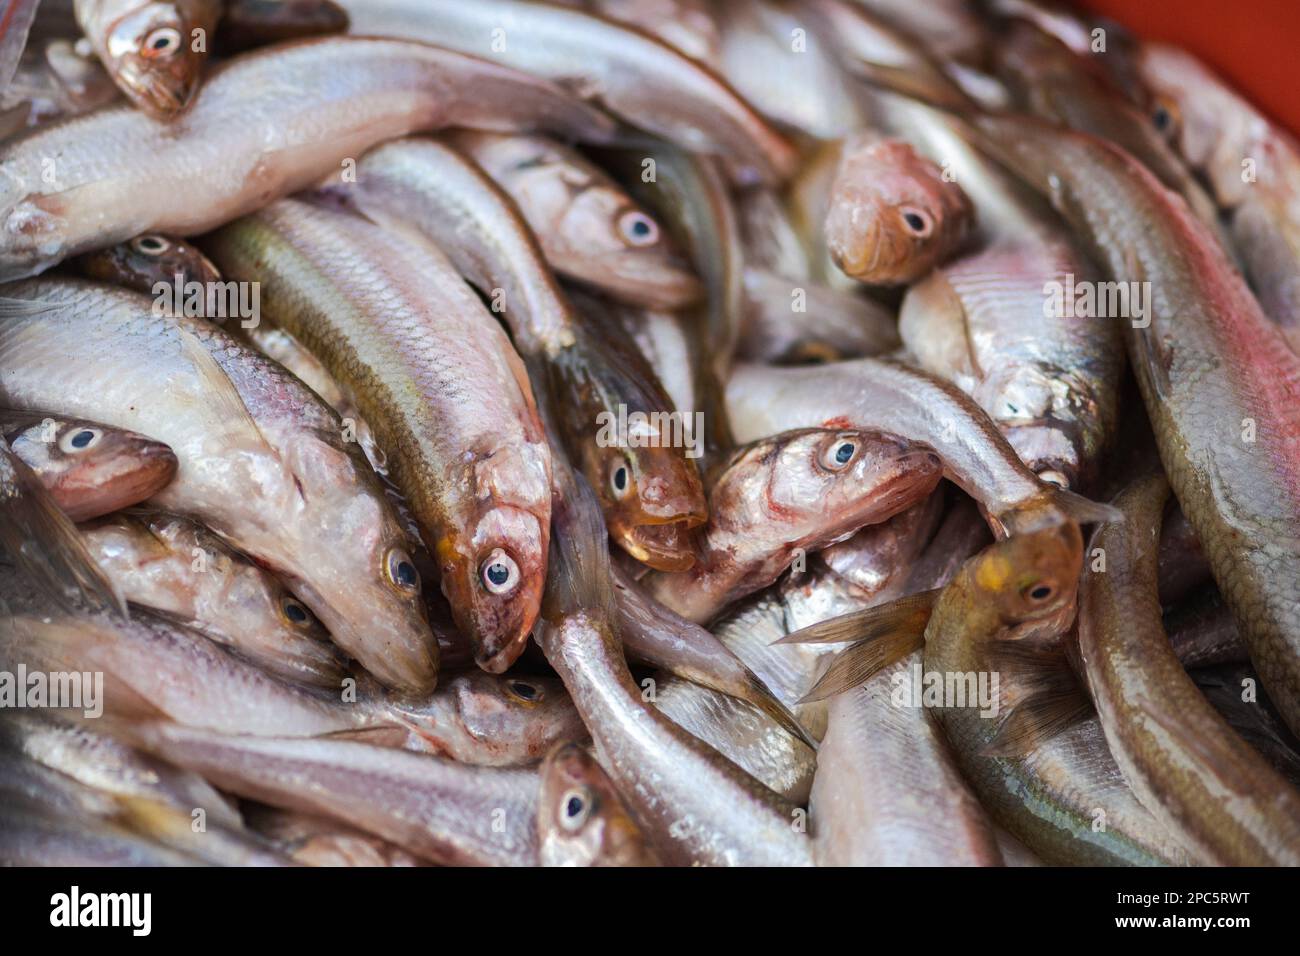 Pescato fresco melta europea o acciughe, specie di pesci della famiglia Osmeridae, primo piano Foto Stock